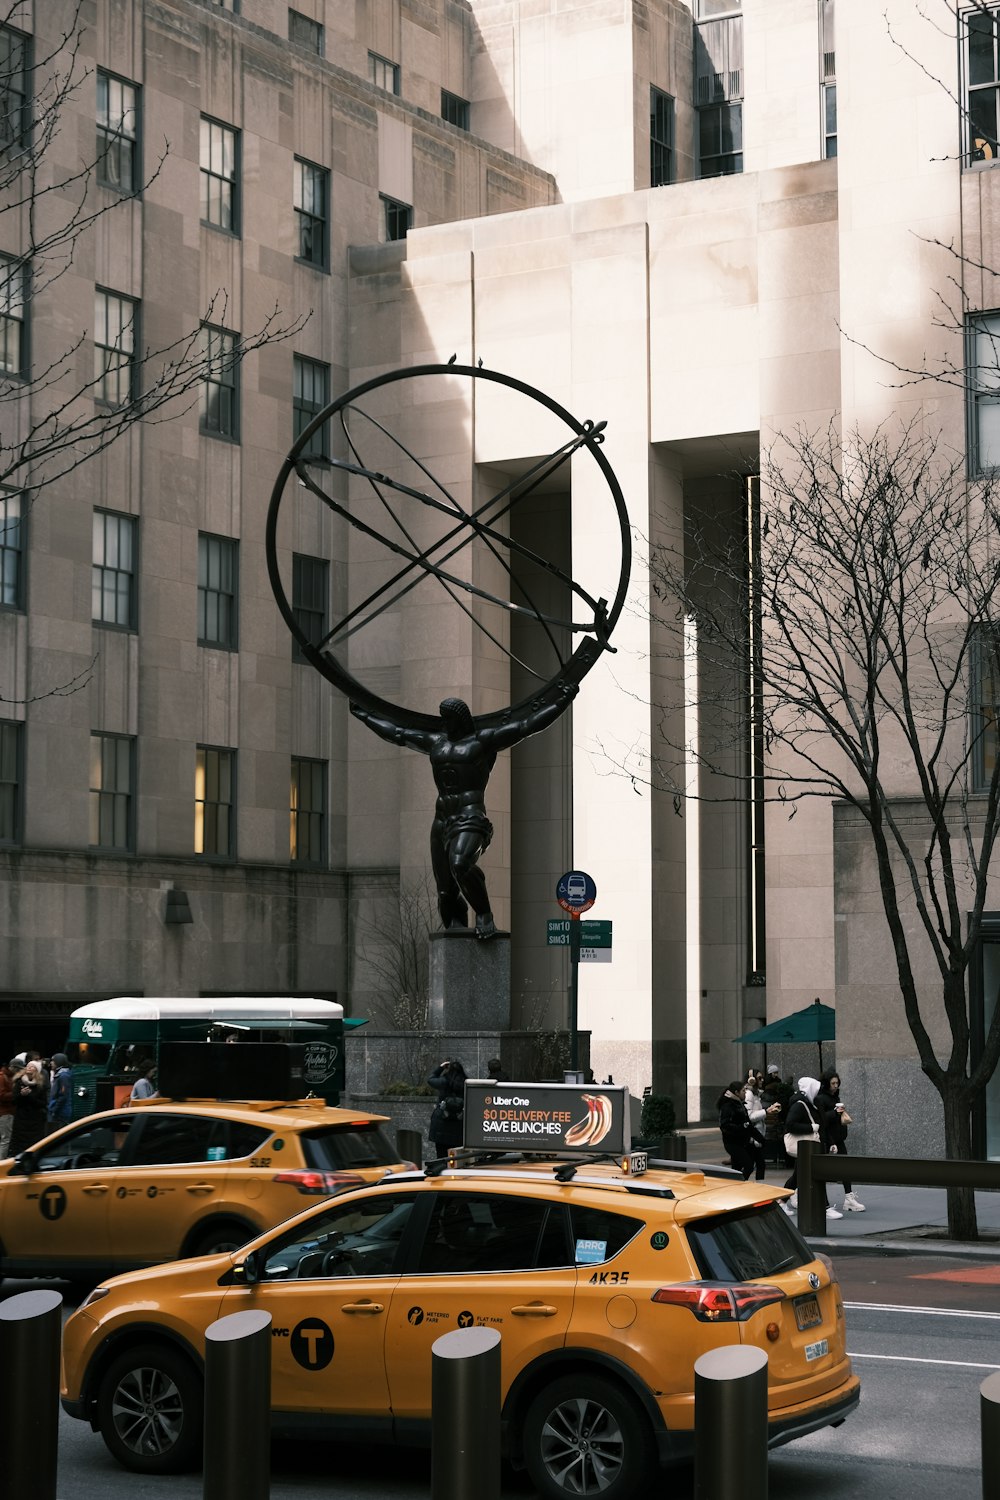 Una scena di strada con taxi e una statua